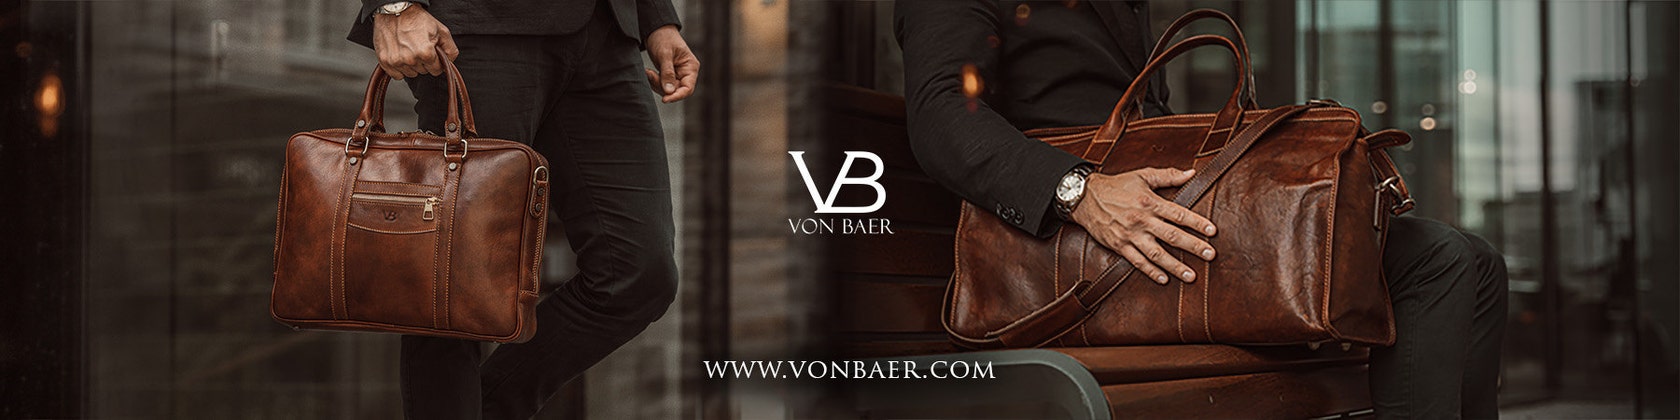 Leather wallets - Von Baer